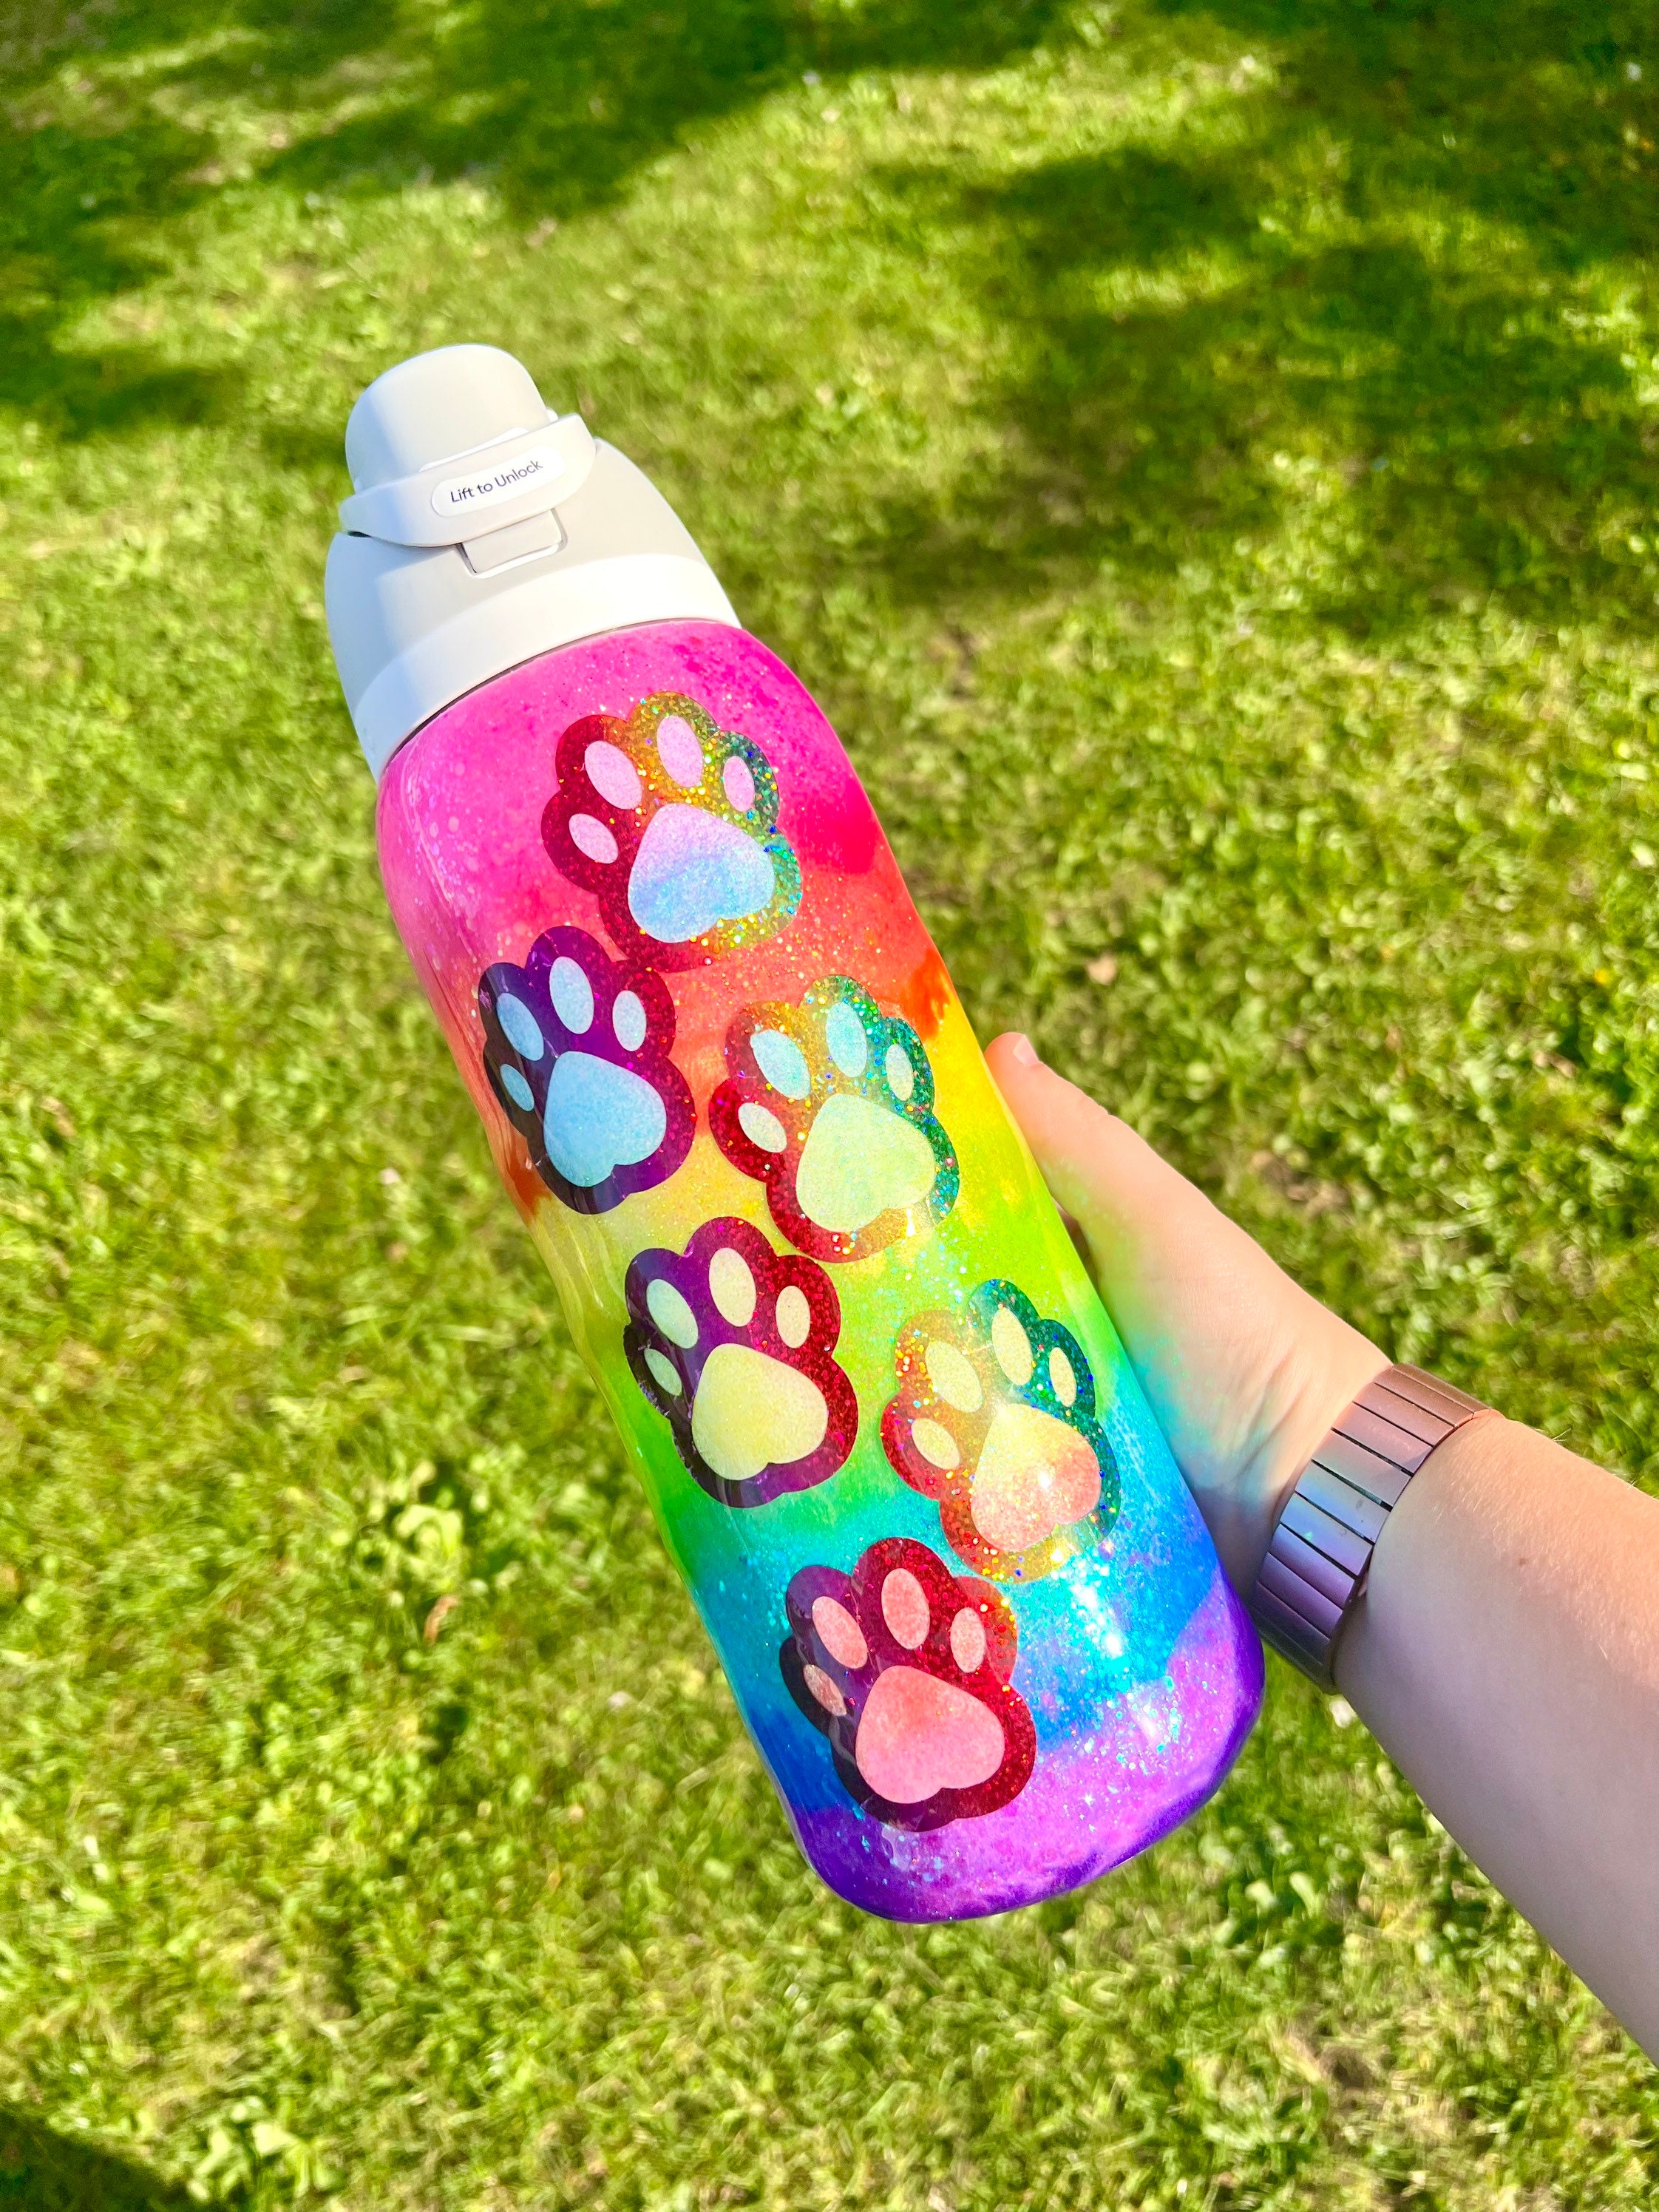 Animal Cracker Glitter Owala Bottle – KM Handmade Boutique